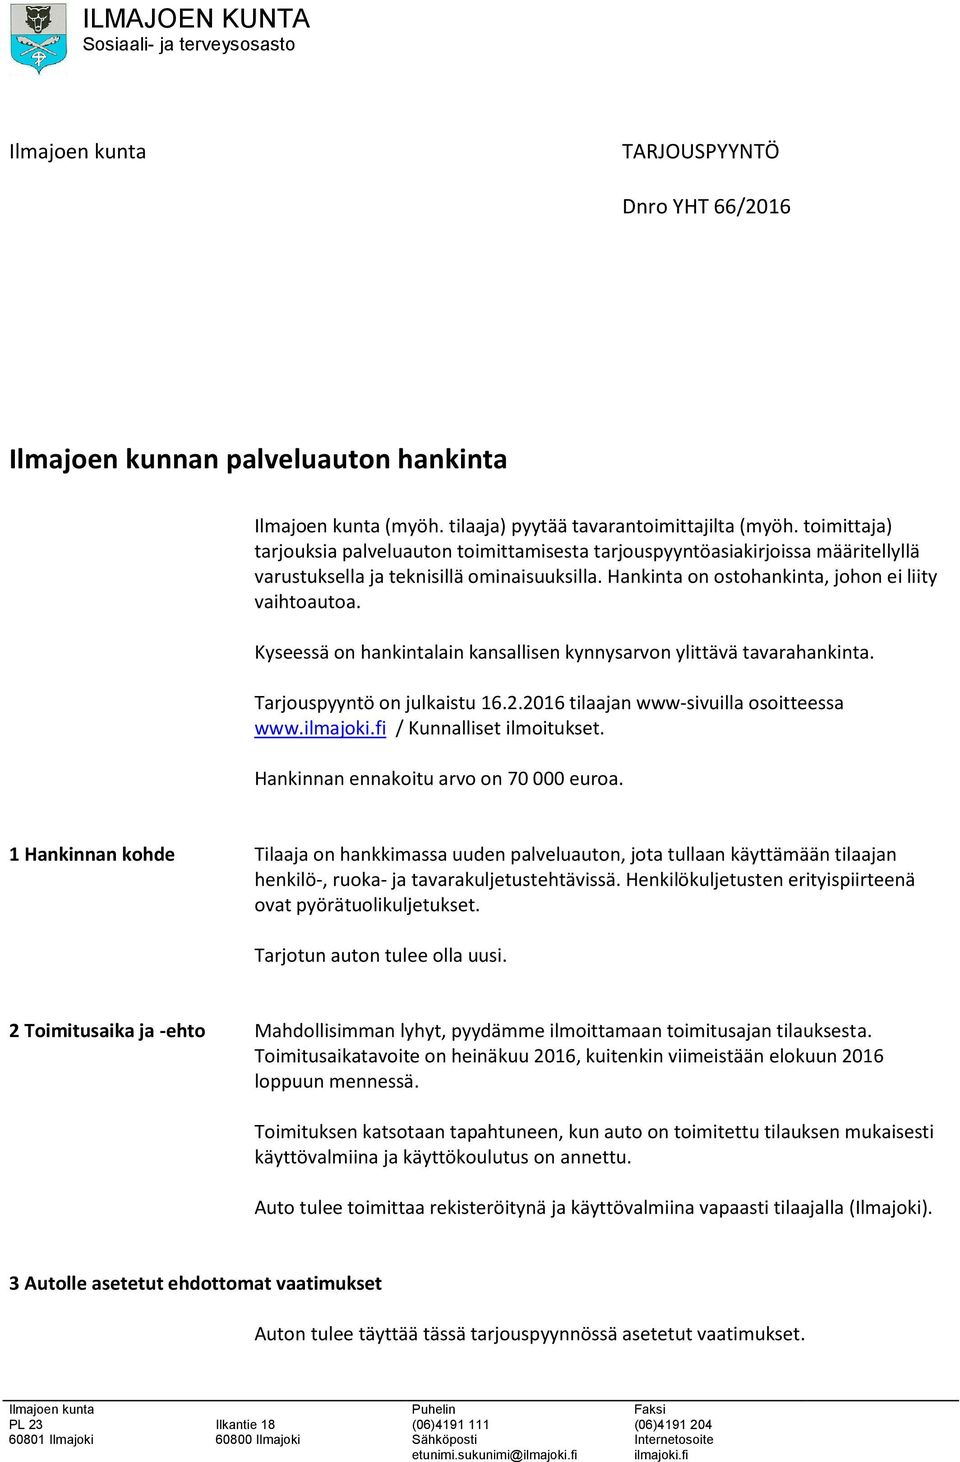 Kyseessä on hankintalain kansallisen kynnysarvon ylittävä tavarahankinta. Tarjouspyyntö on julkaistu 16.2.2016 tilaajan www-sivuilla osoitteessa www.ilmajoki.fi / Kunnalliset ilmoitukset.